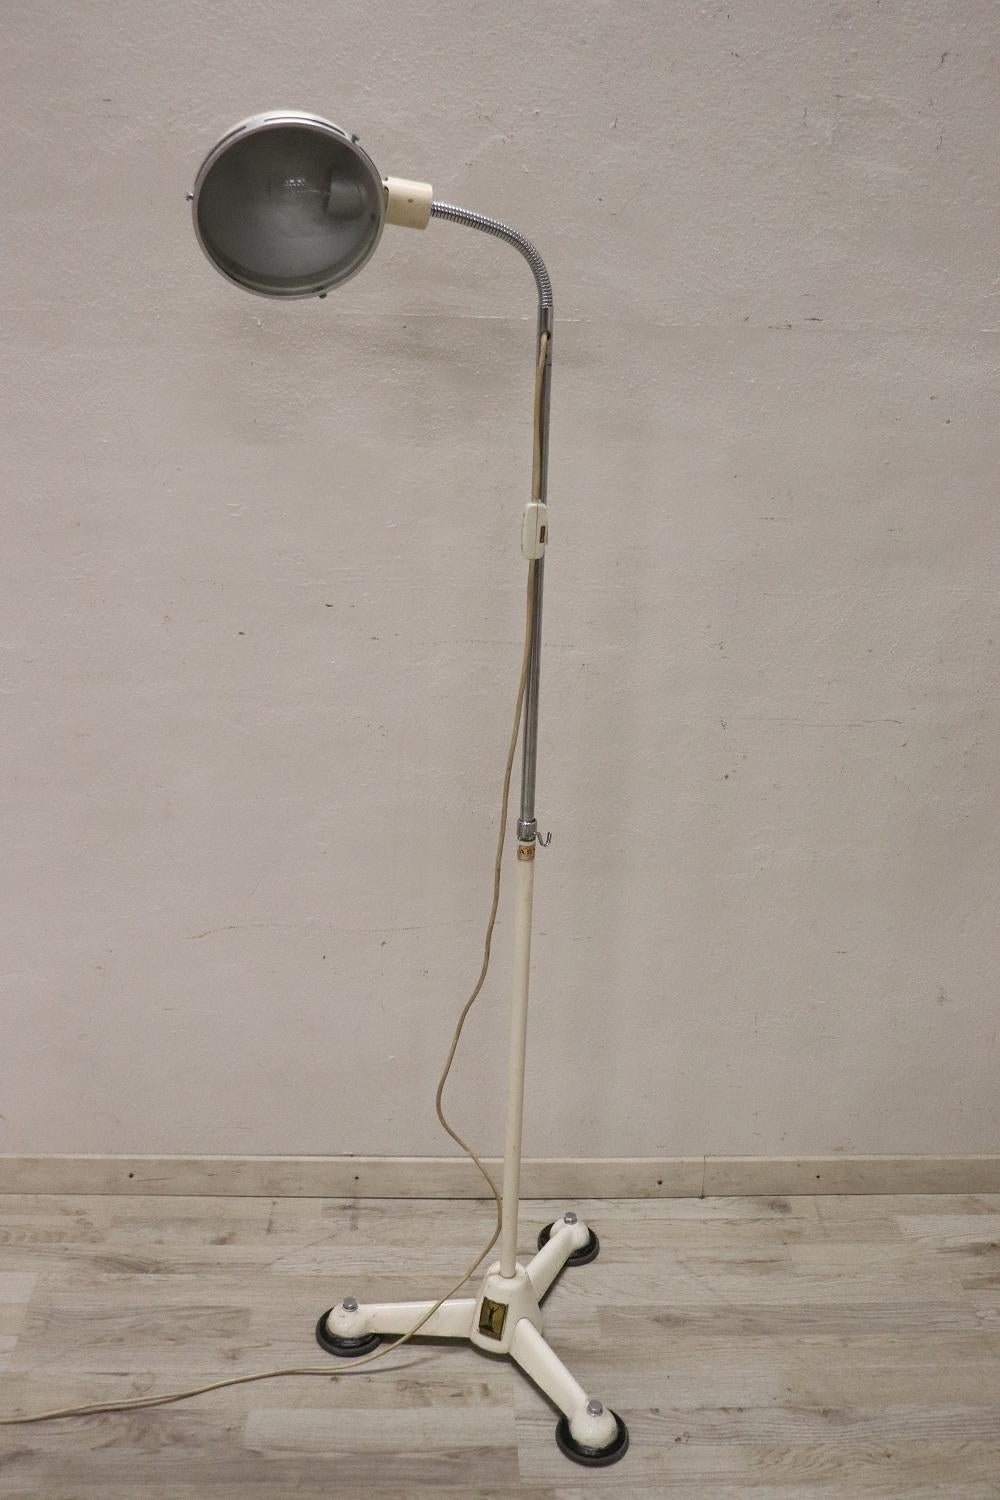 Beau lampadaire médical en métal laqué Design allemand des années 1950 par Hanau. Travailler. Très rare pour les environnements vintage. La lampe est réglable en hauteur et la lumière peut être déplacée dans la direction souhaitée. Présente les